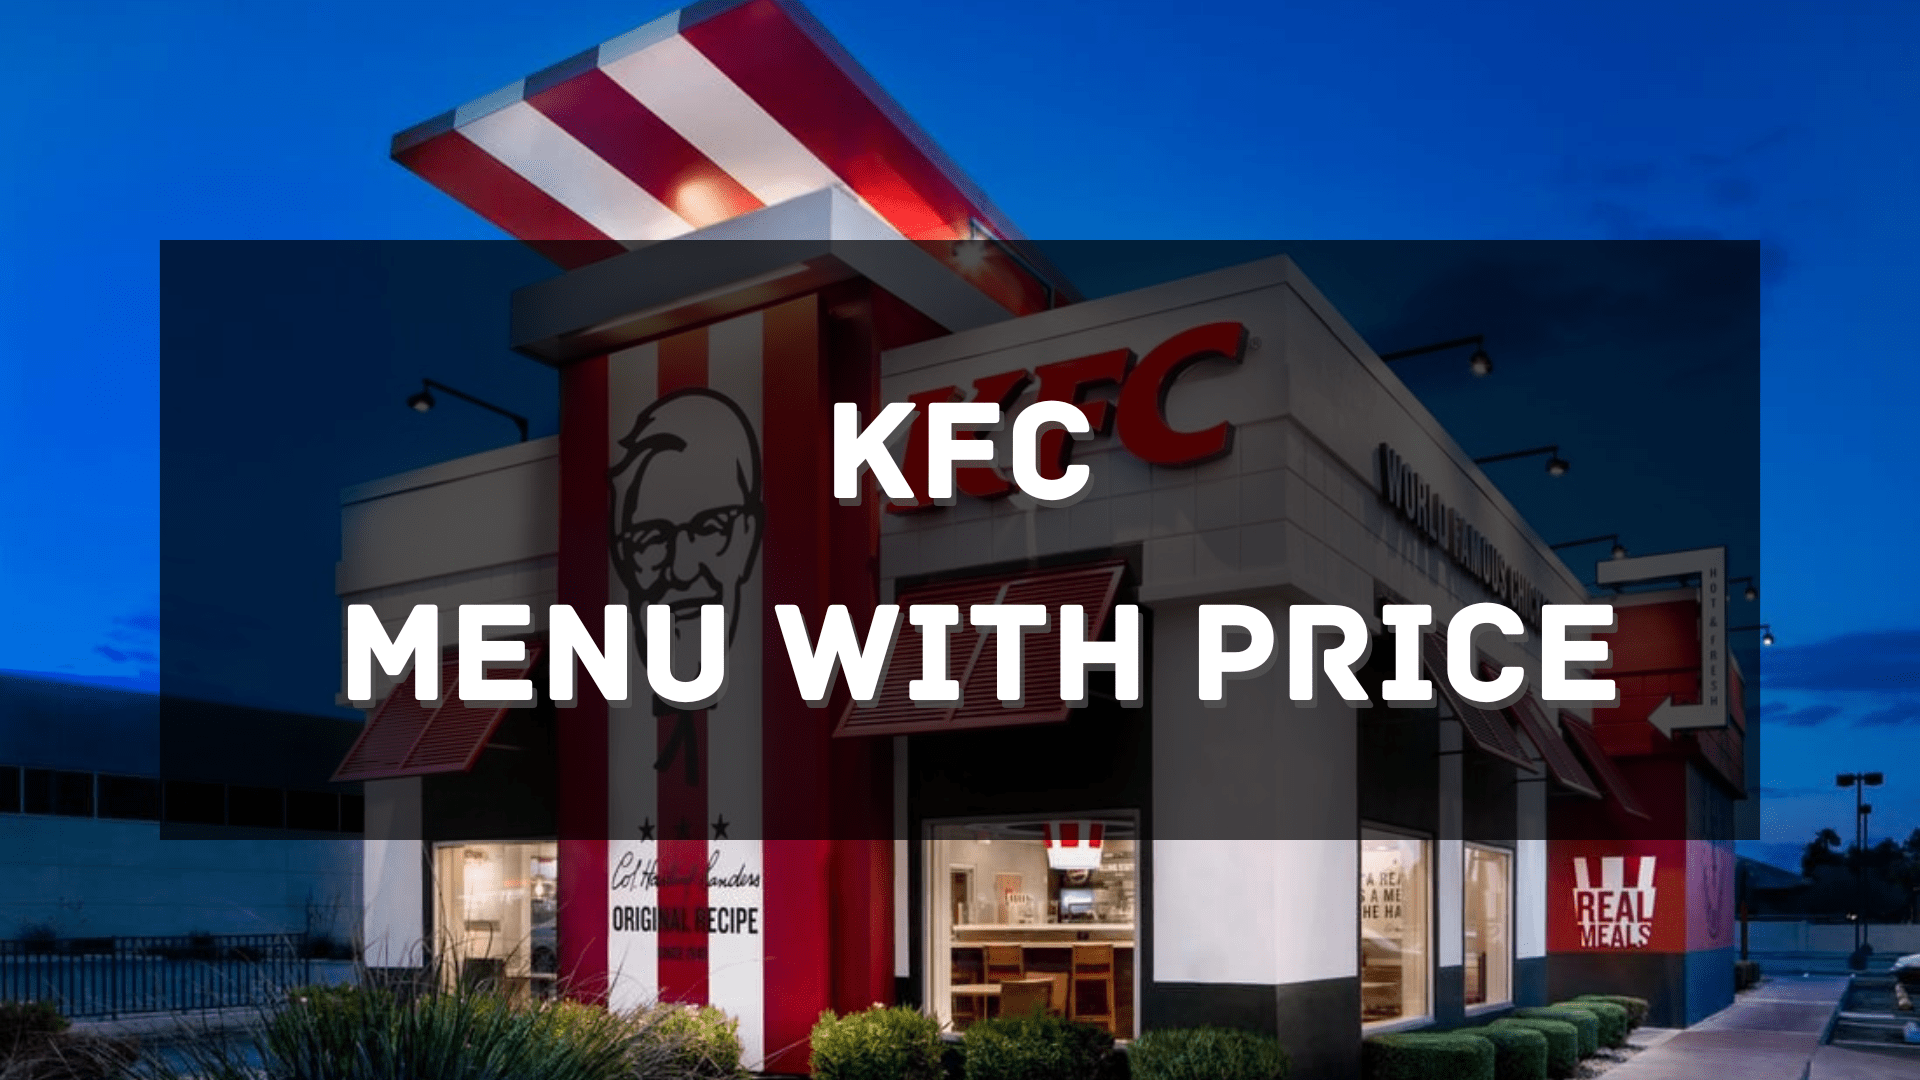 KFC Menu with Price SG